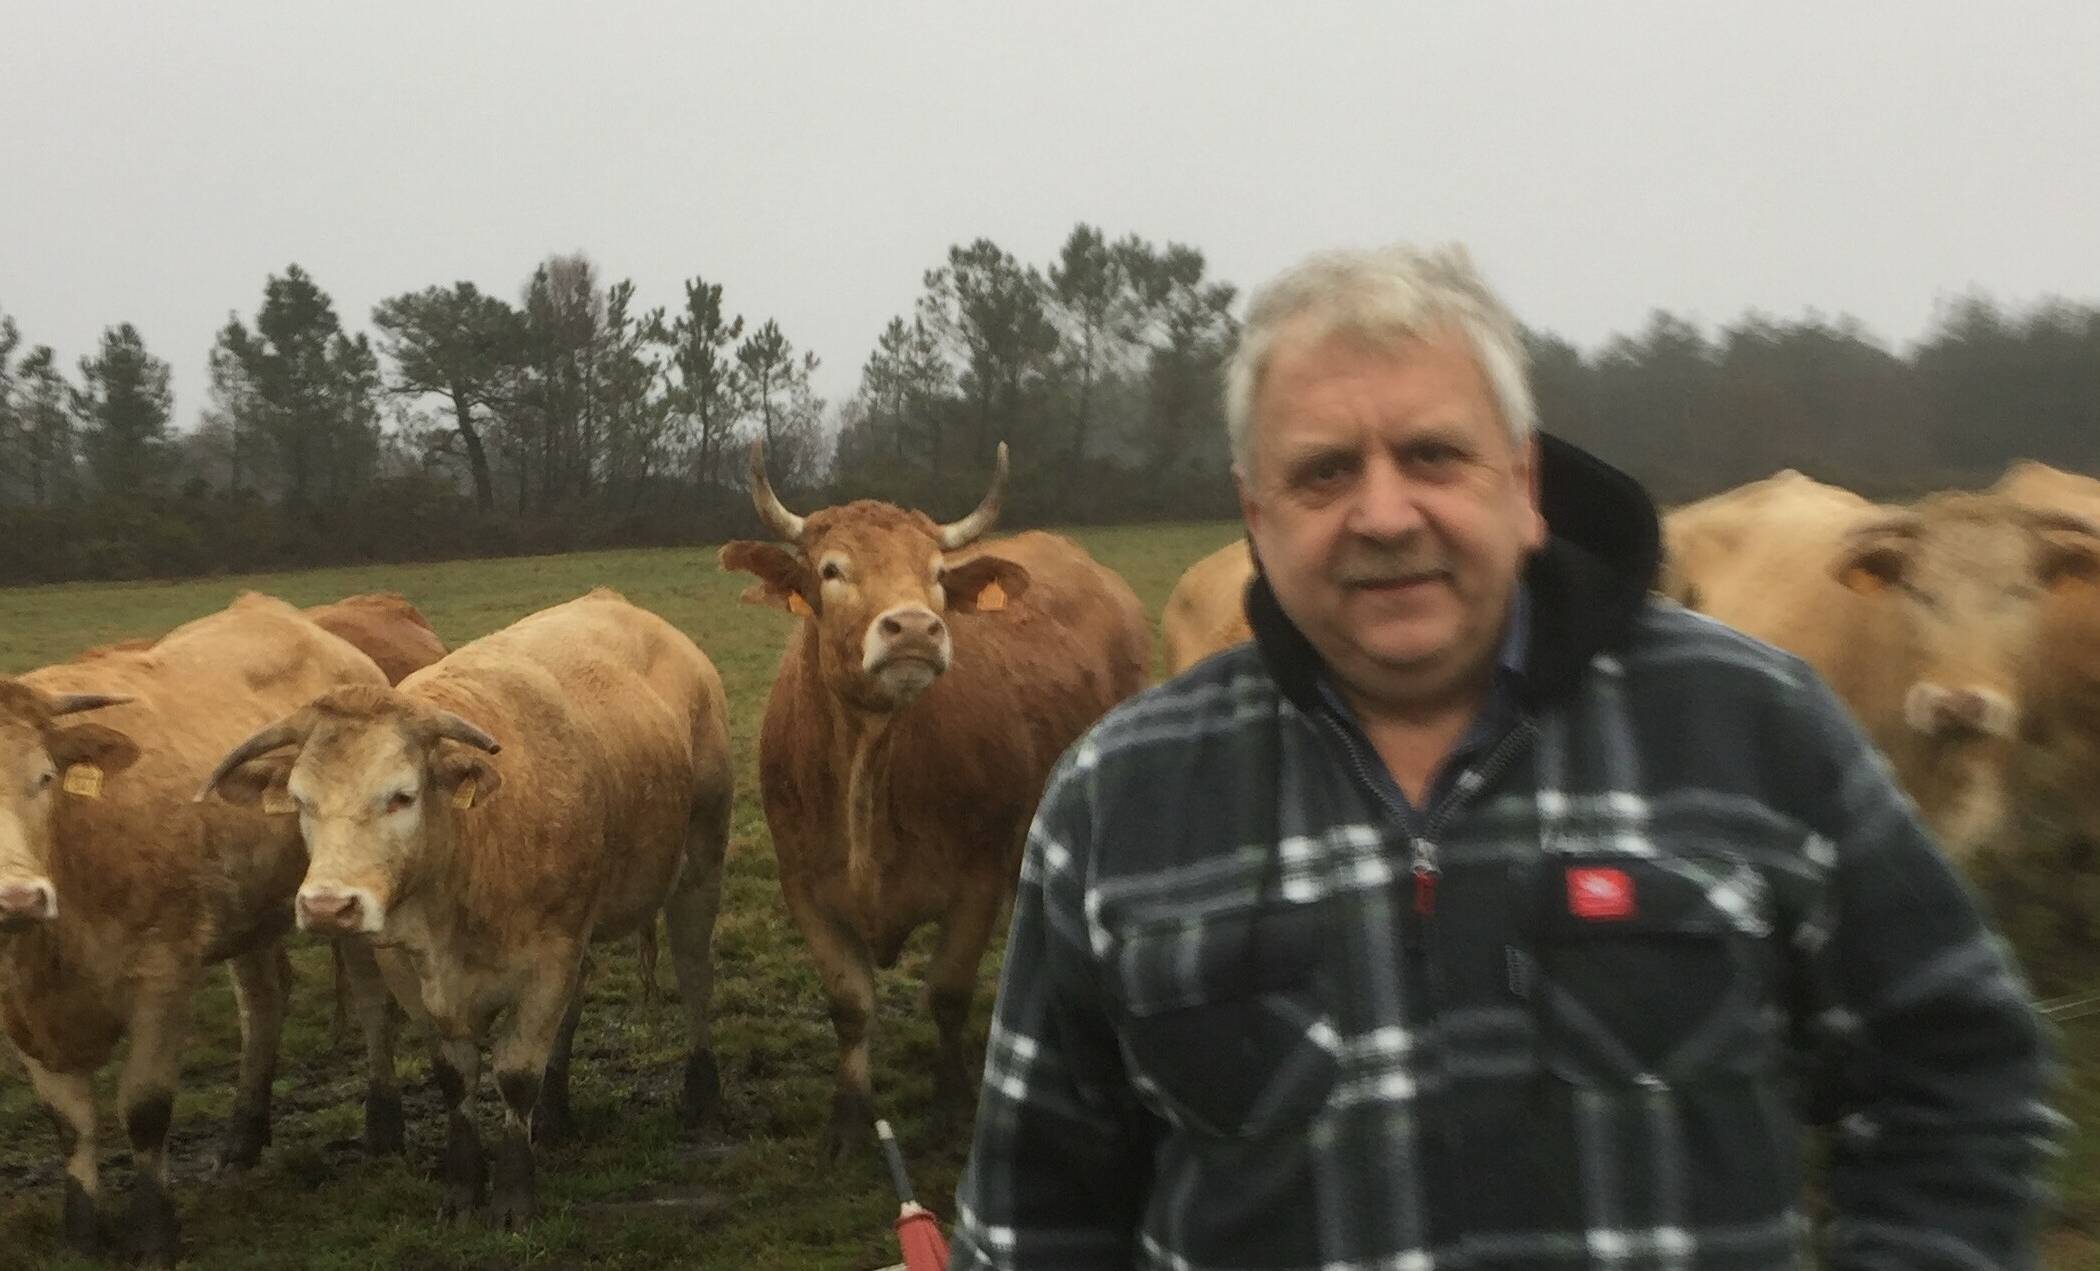  Innungsmeister Willi Schillings vor „seiner“ Herde, die in Viersen bis zur Schlachtung heranwächst. Selbst der Weg in die Metzgerei wird für die Tiere möglichst stressfrei ausgelegt.   